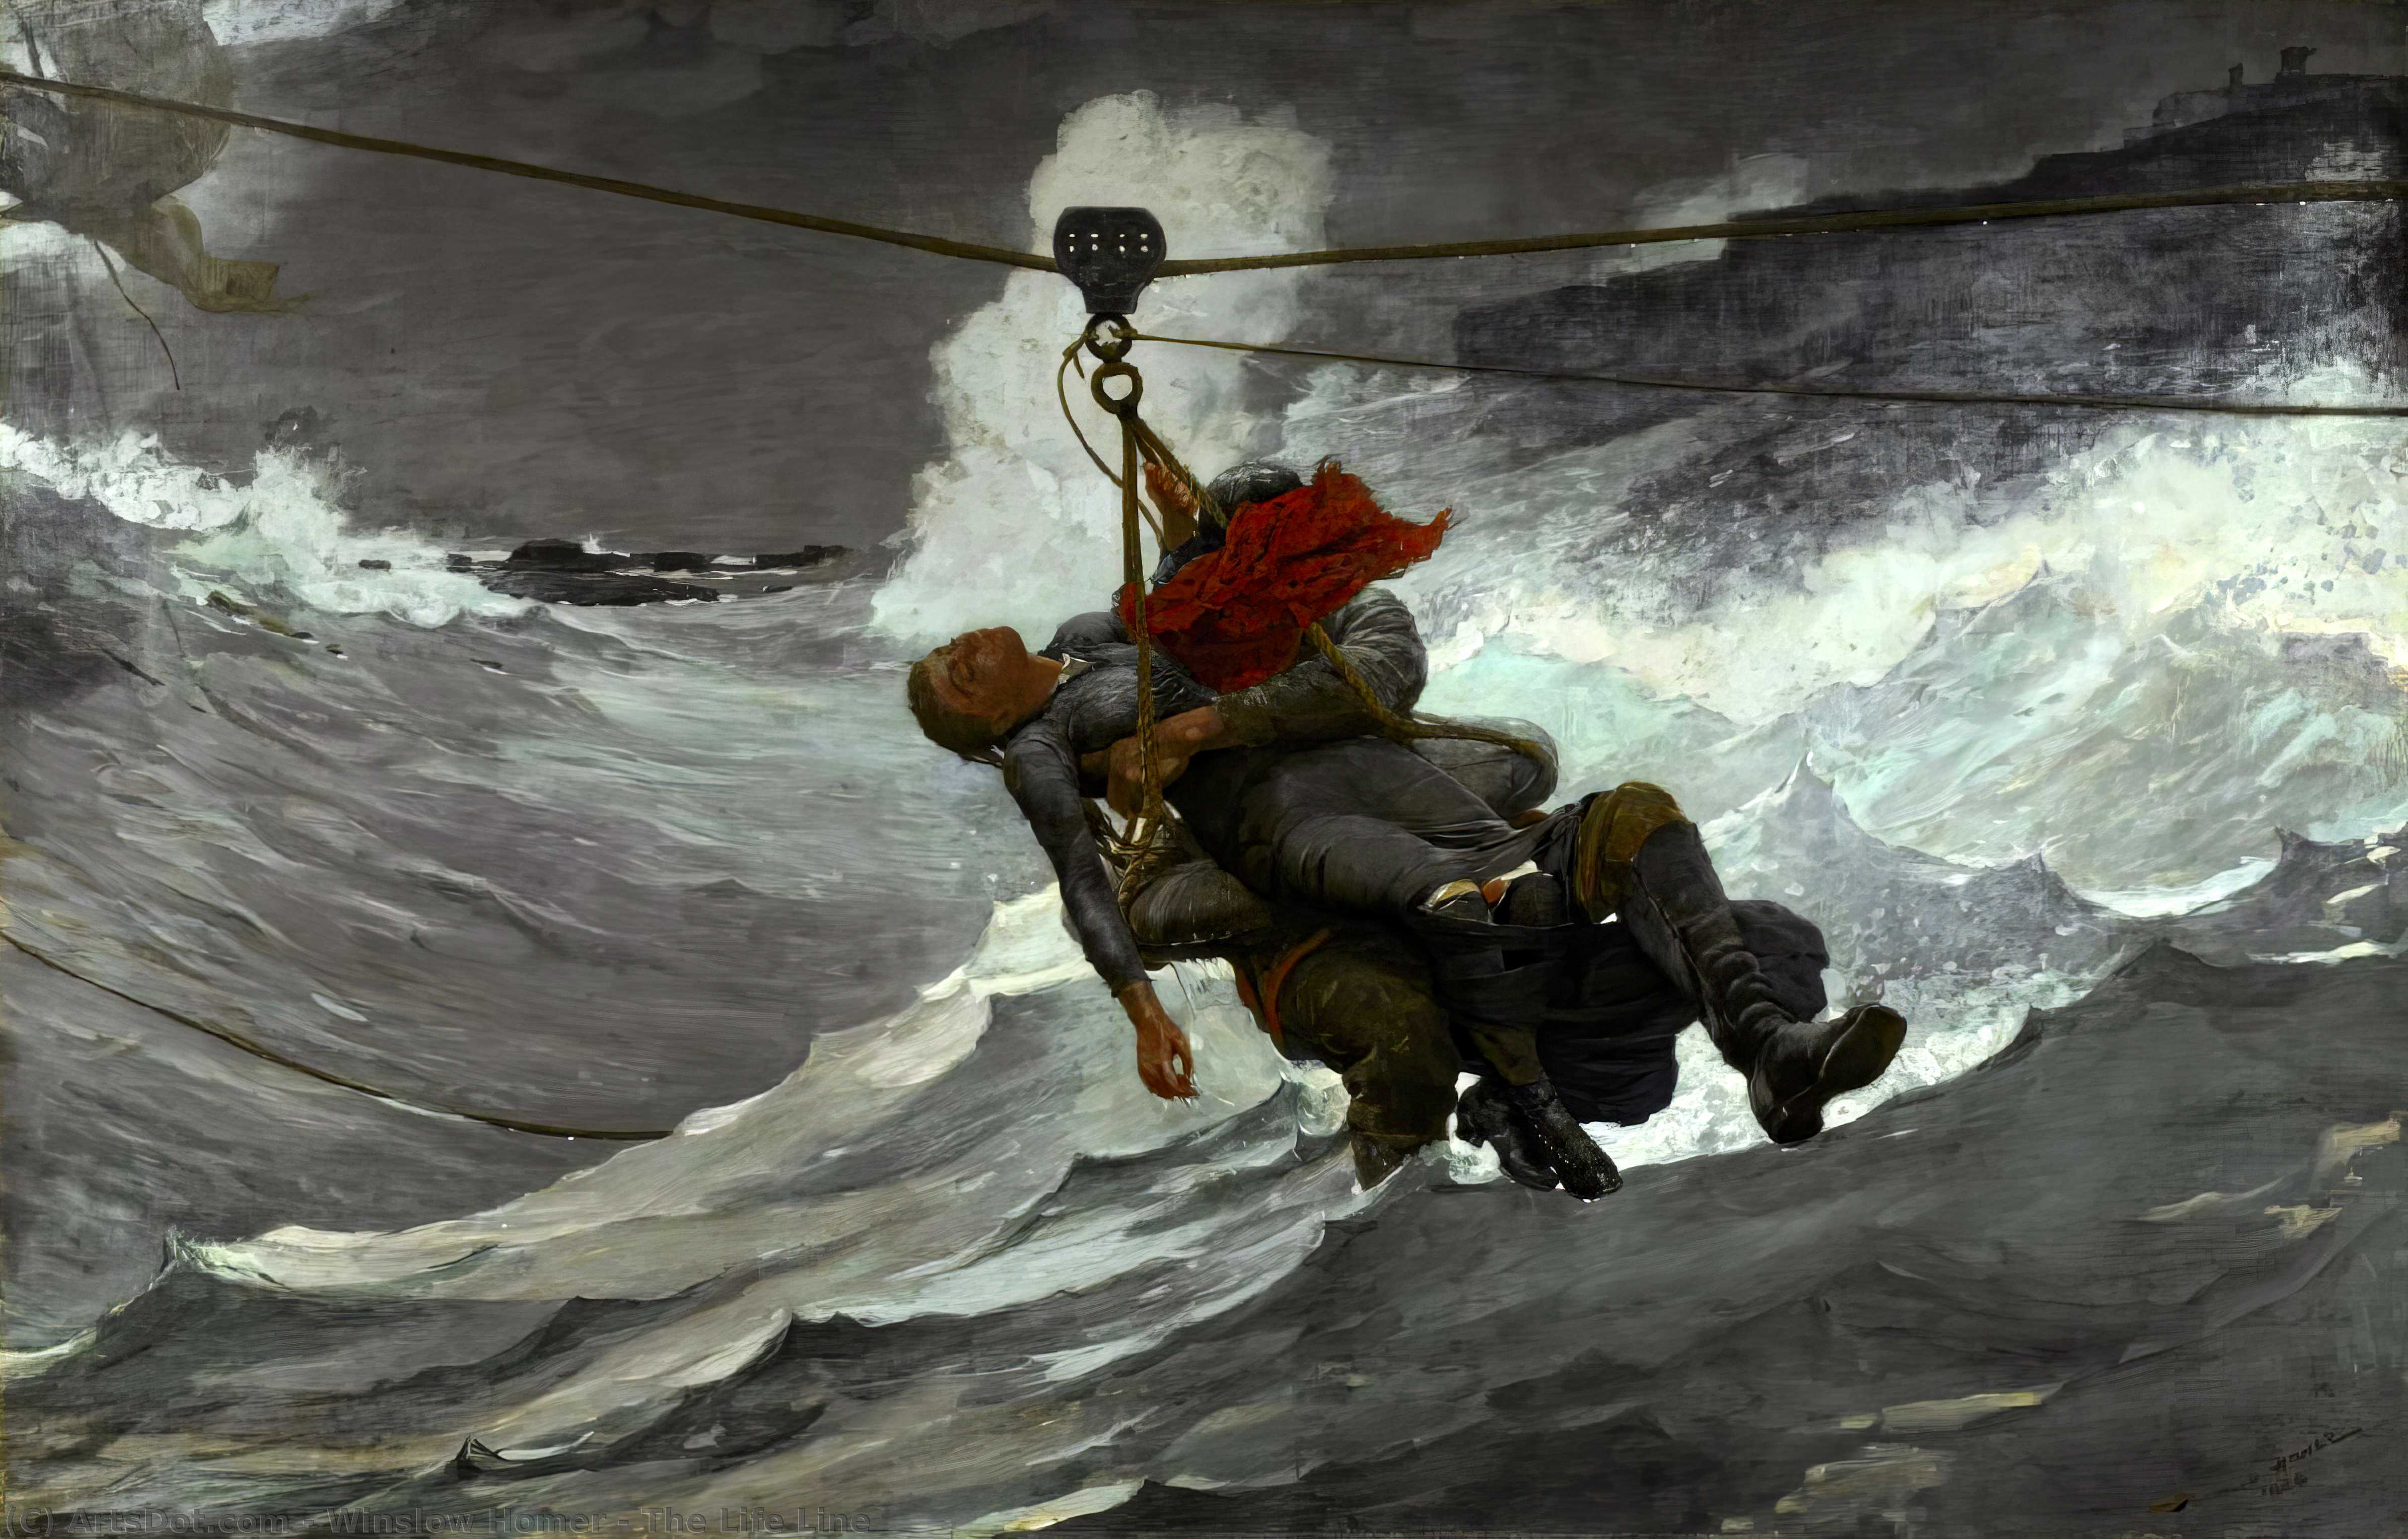 Achat Reproductions D'art La ligne de vie, 1884 de Winslow Homer (1836-1910, United States) | ArtsDot.com